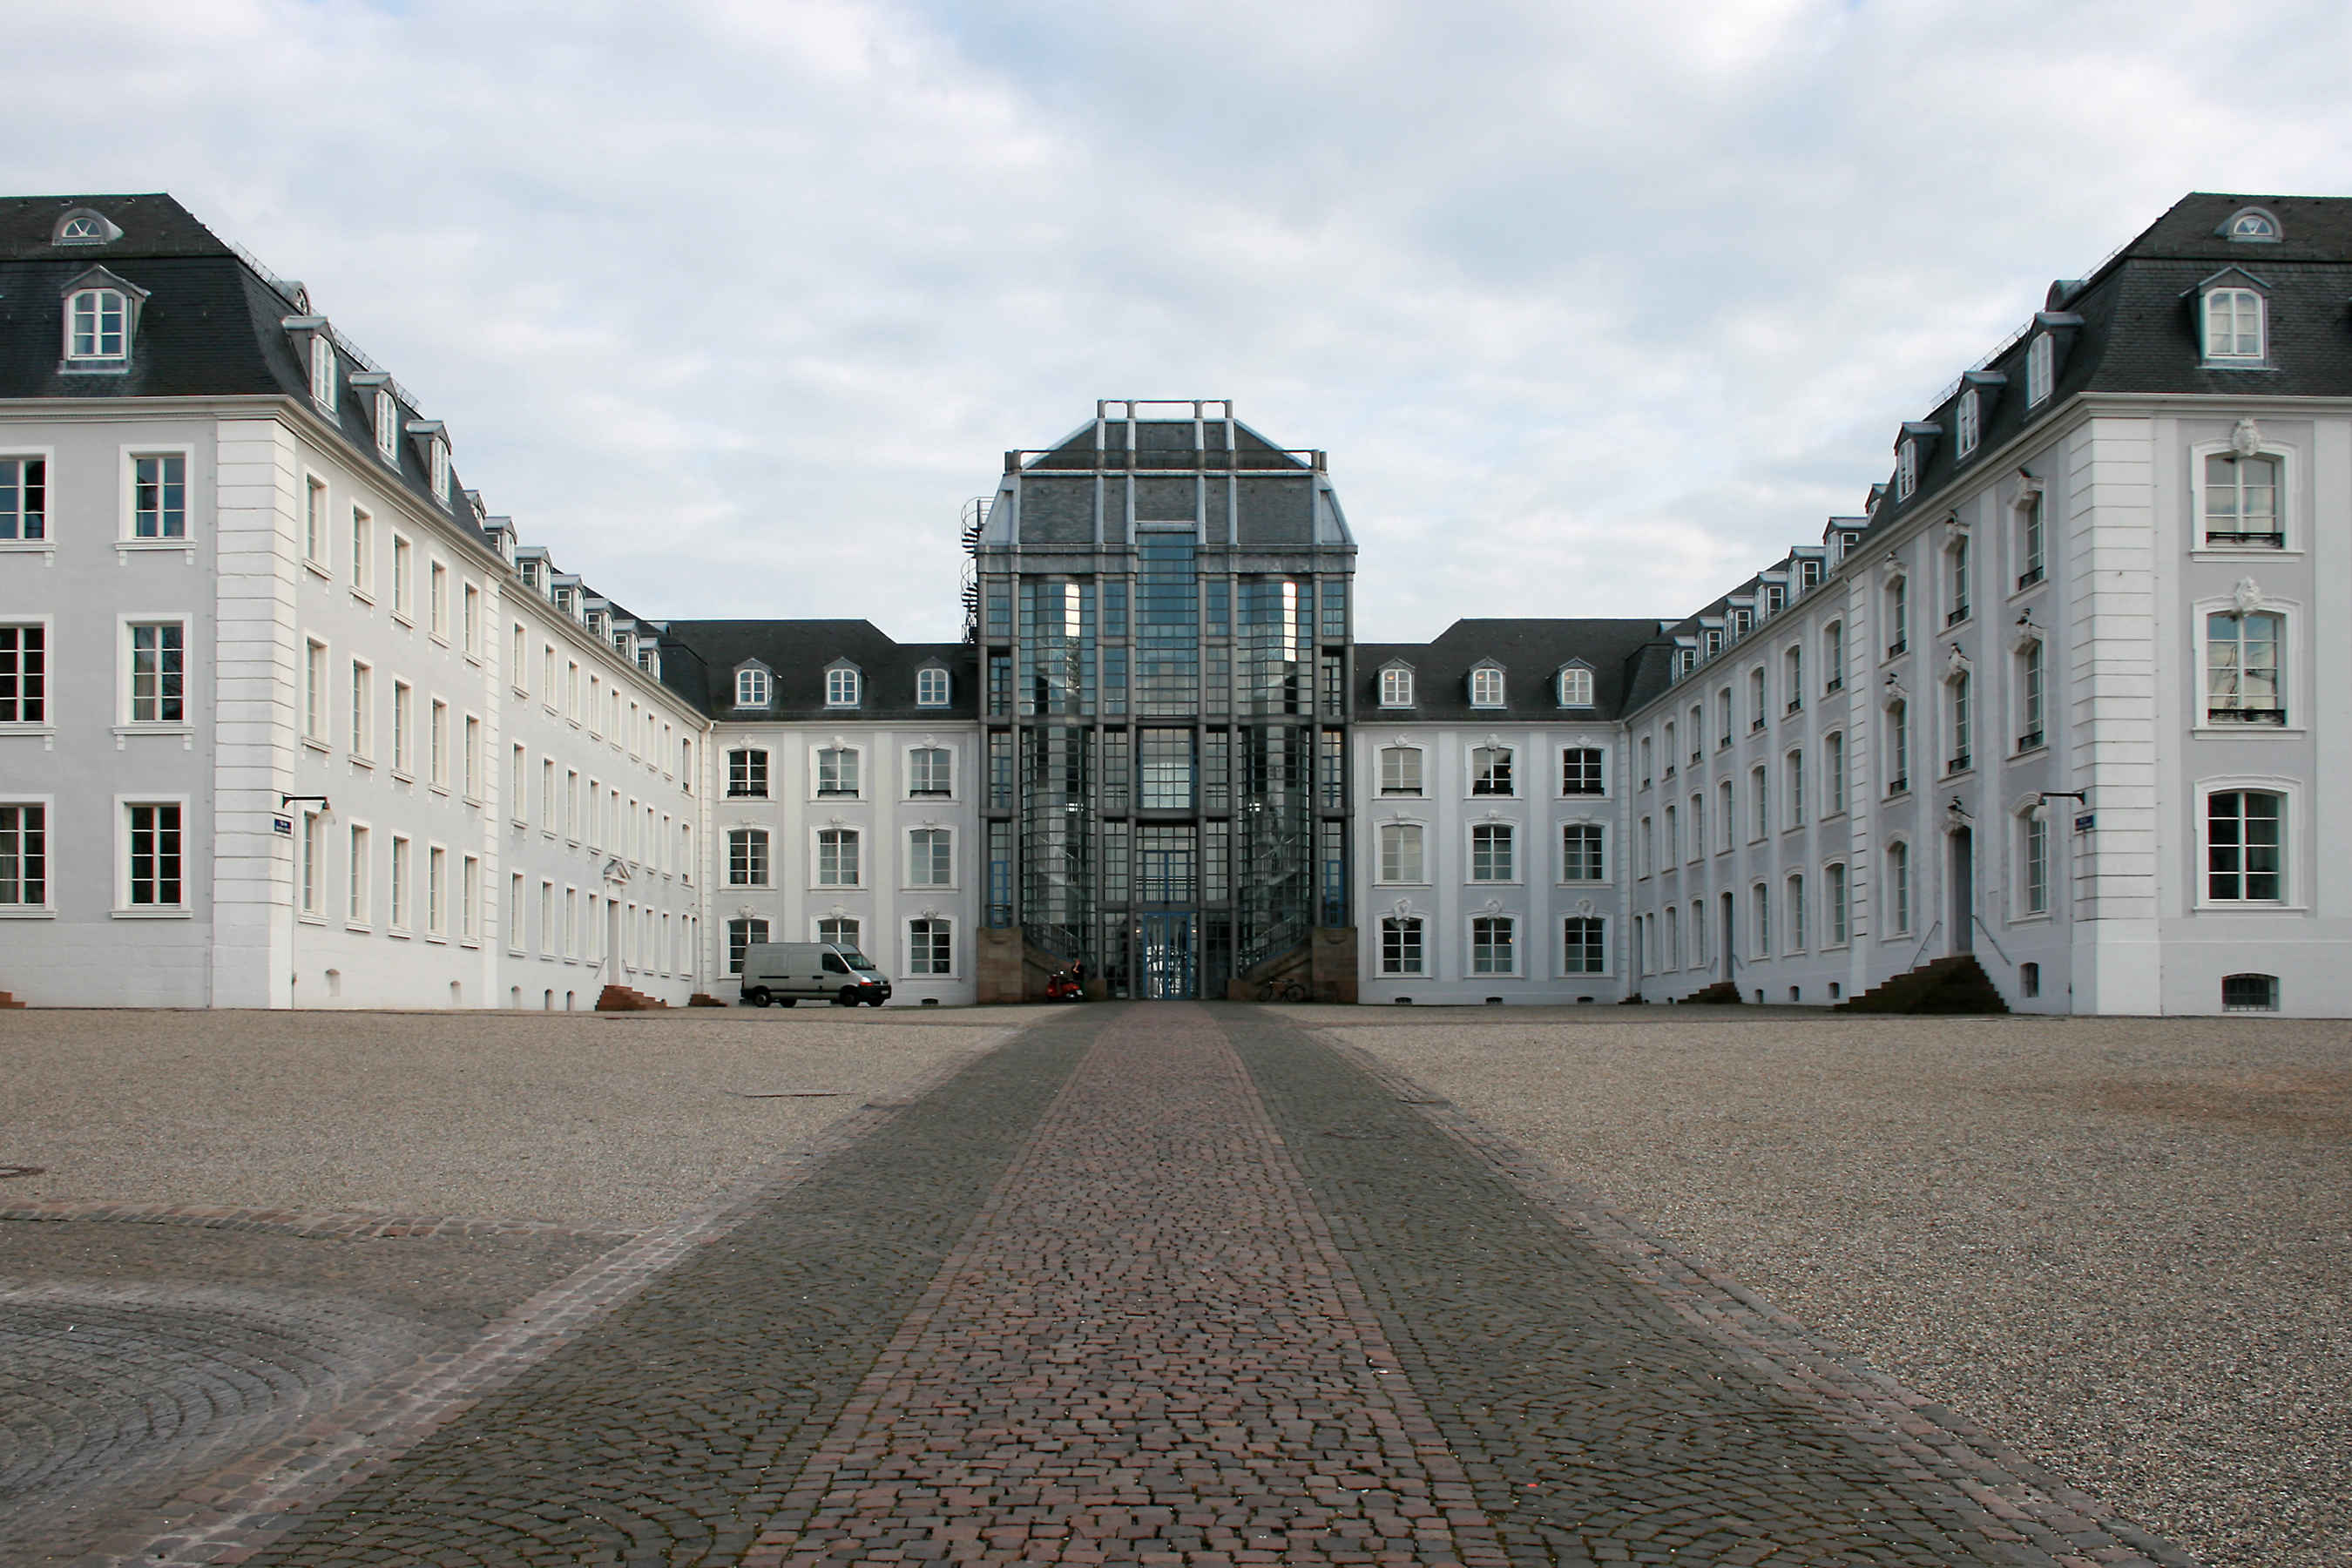 Castillo de Saarbrücken - Plaza del Memorial Invisible. Autor: Flicka. Atribución: Creative Commons Attribution-Share Alike 3.0 Unported. Fuente: Wikimedia Commons